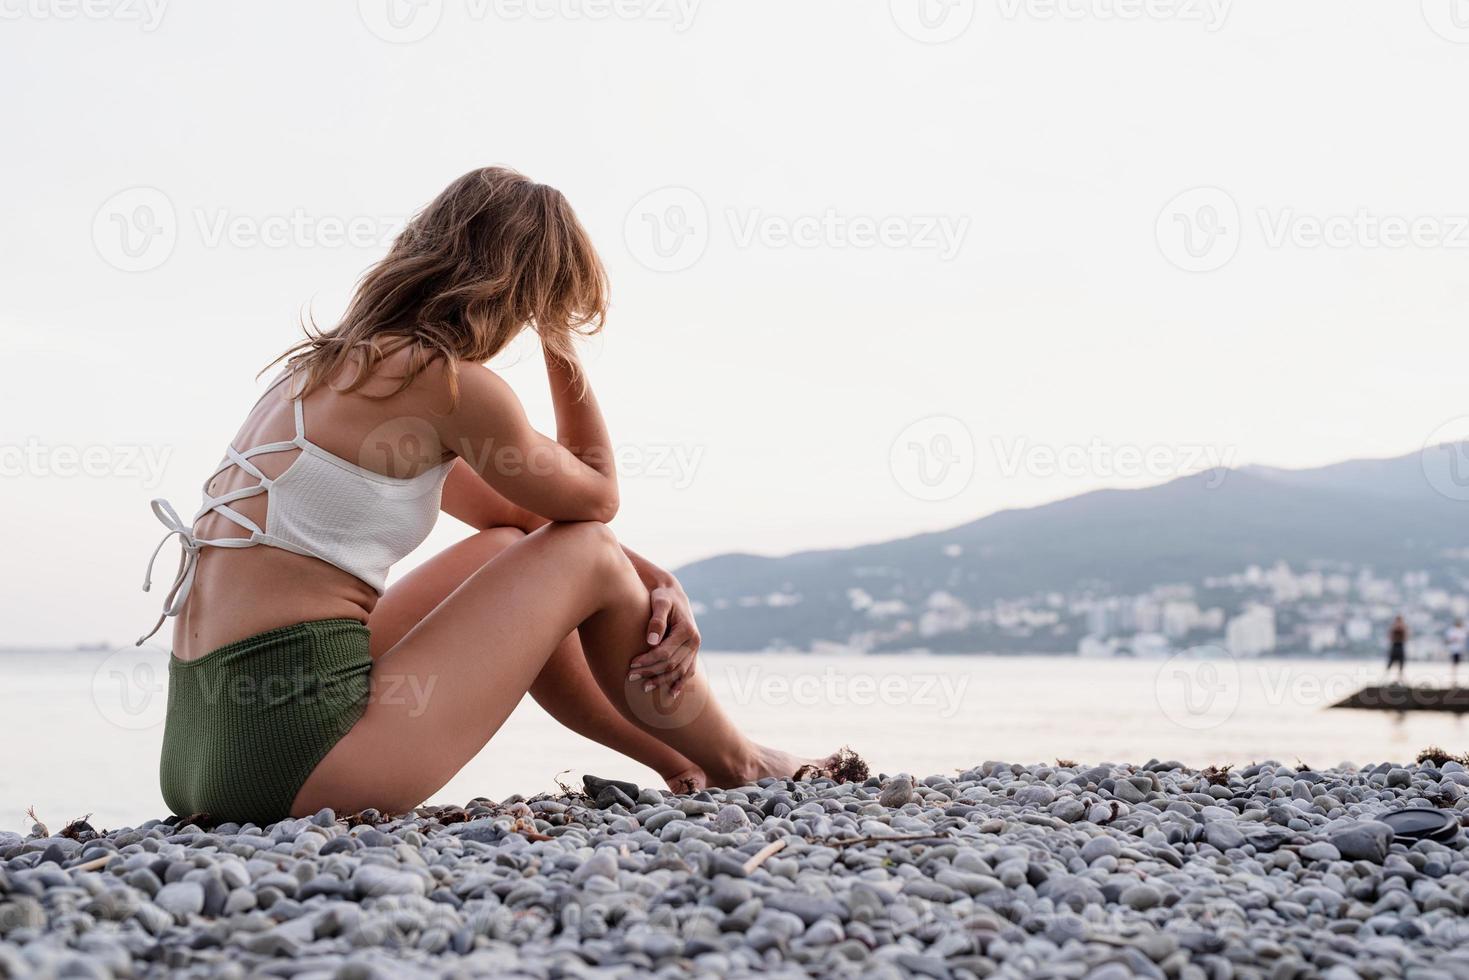 jonge, depressieve vrouw, zittende, op het strand, kijken weg, achterk bezichtiging foto